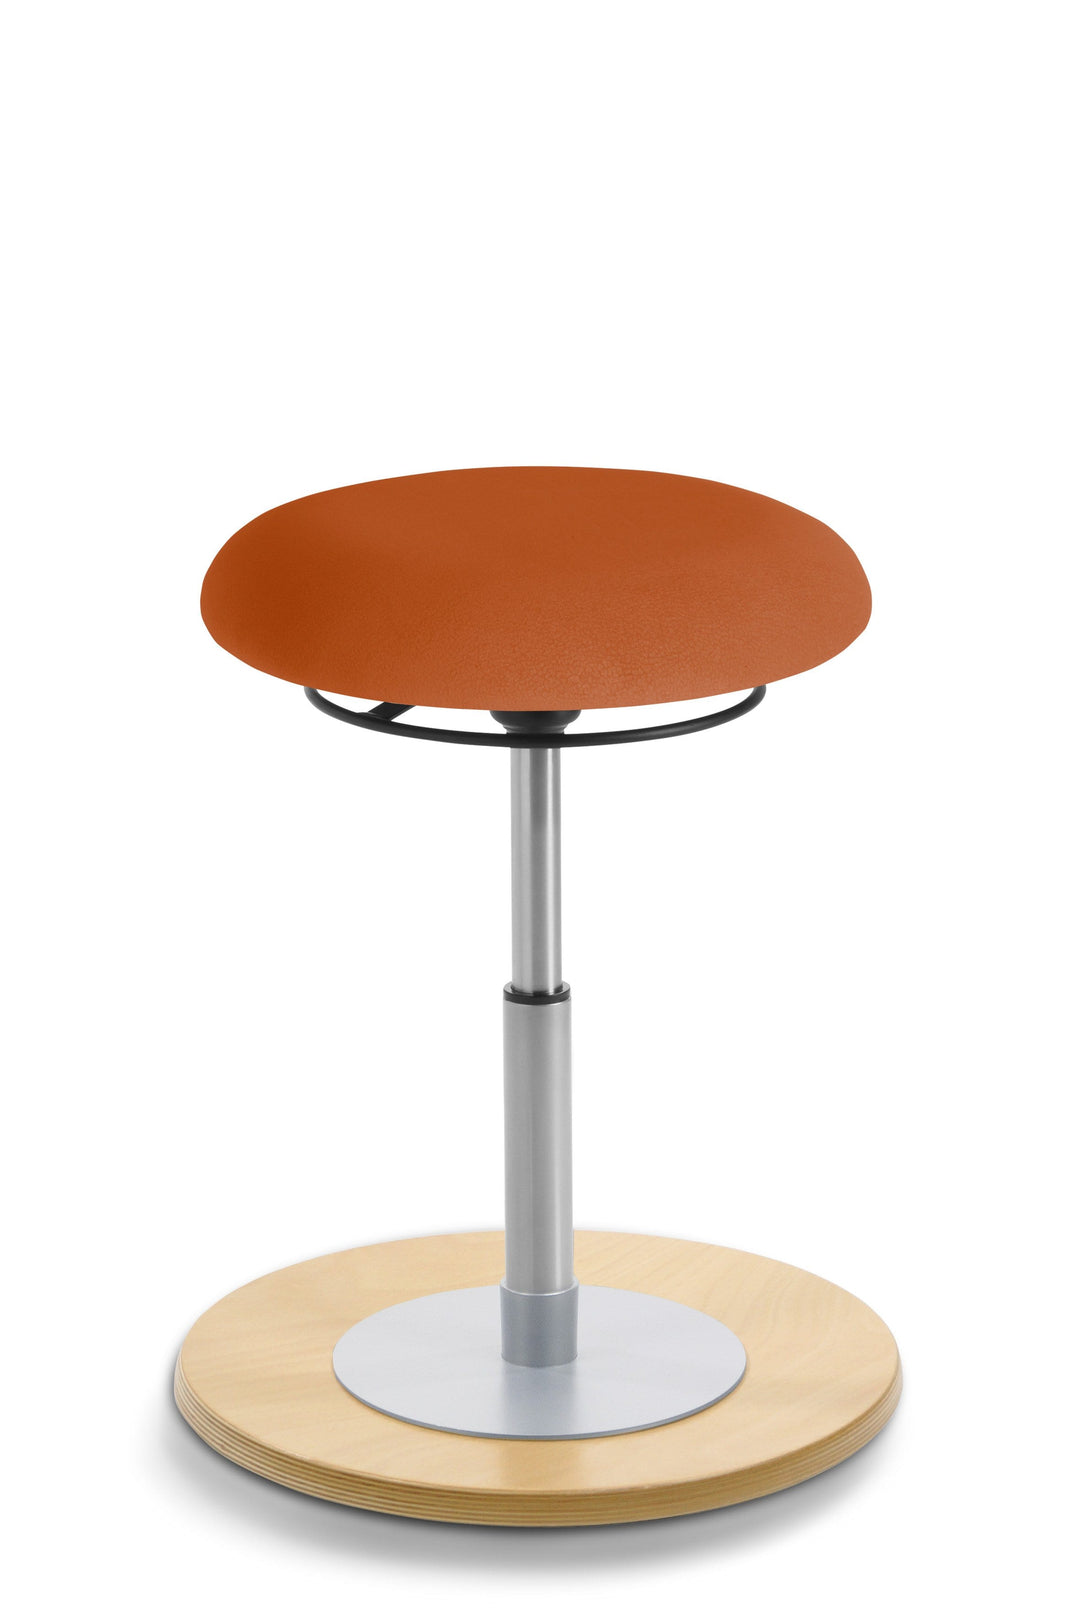 Mayer MyErgosit Taboret Krzesło Stołek balansujący okrągły 39-52cm podstawa sklejka naturalna 1151 N - 4kidspoint.pl